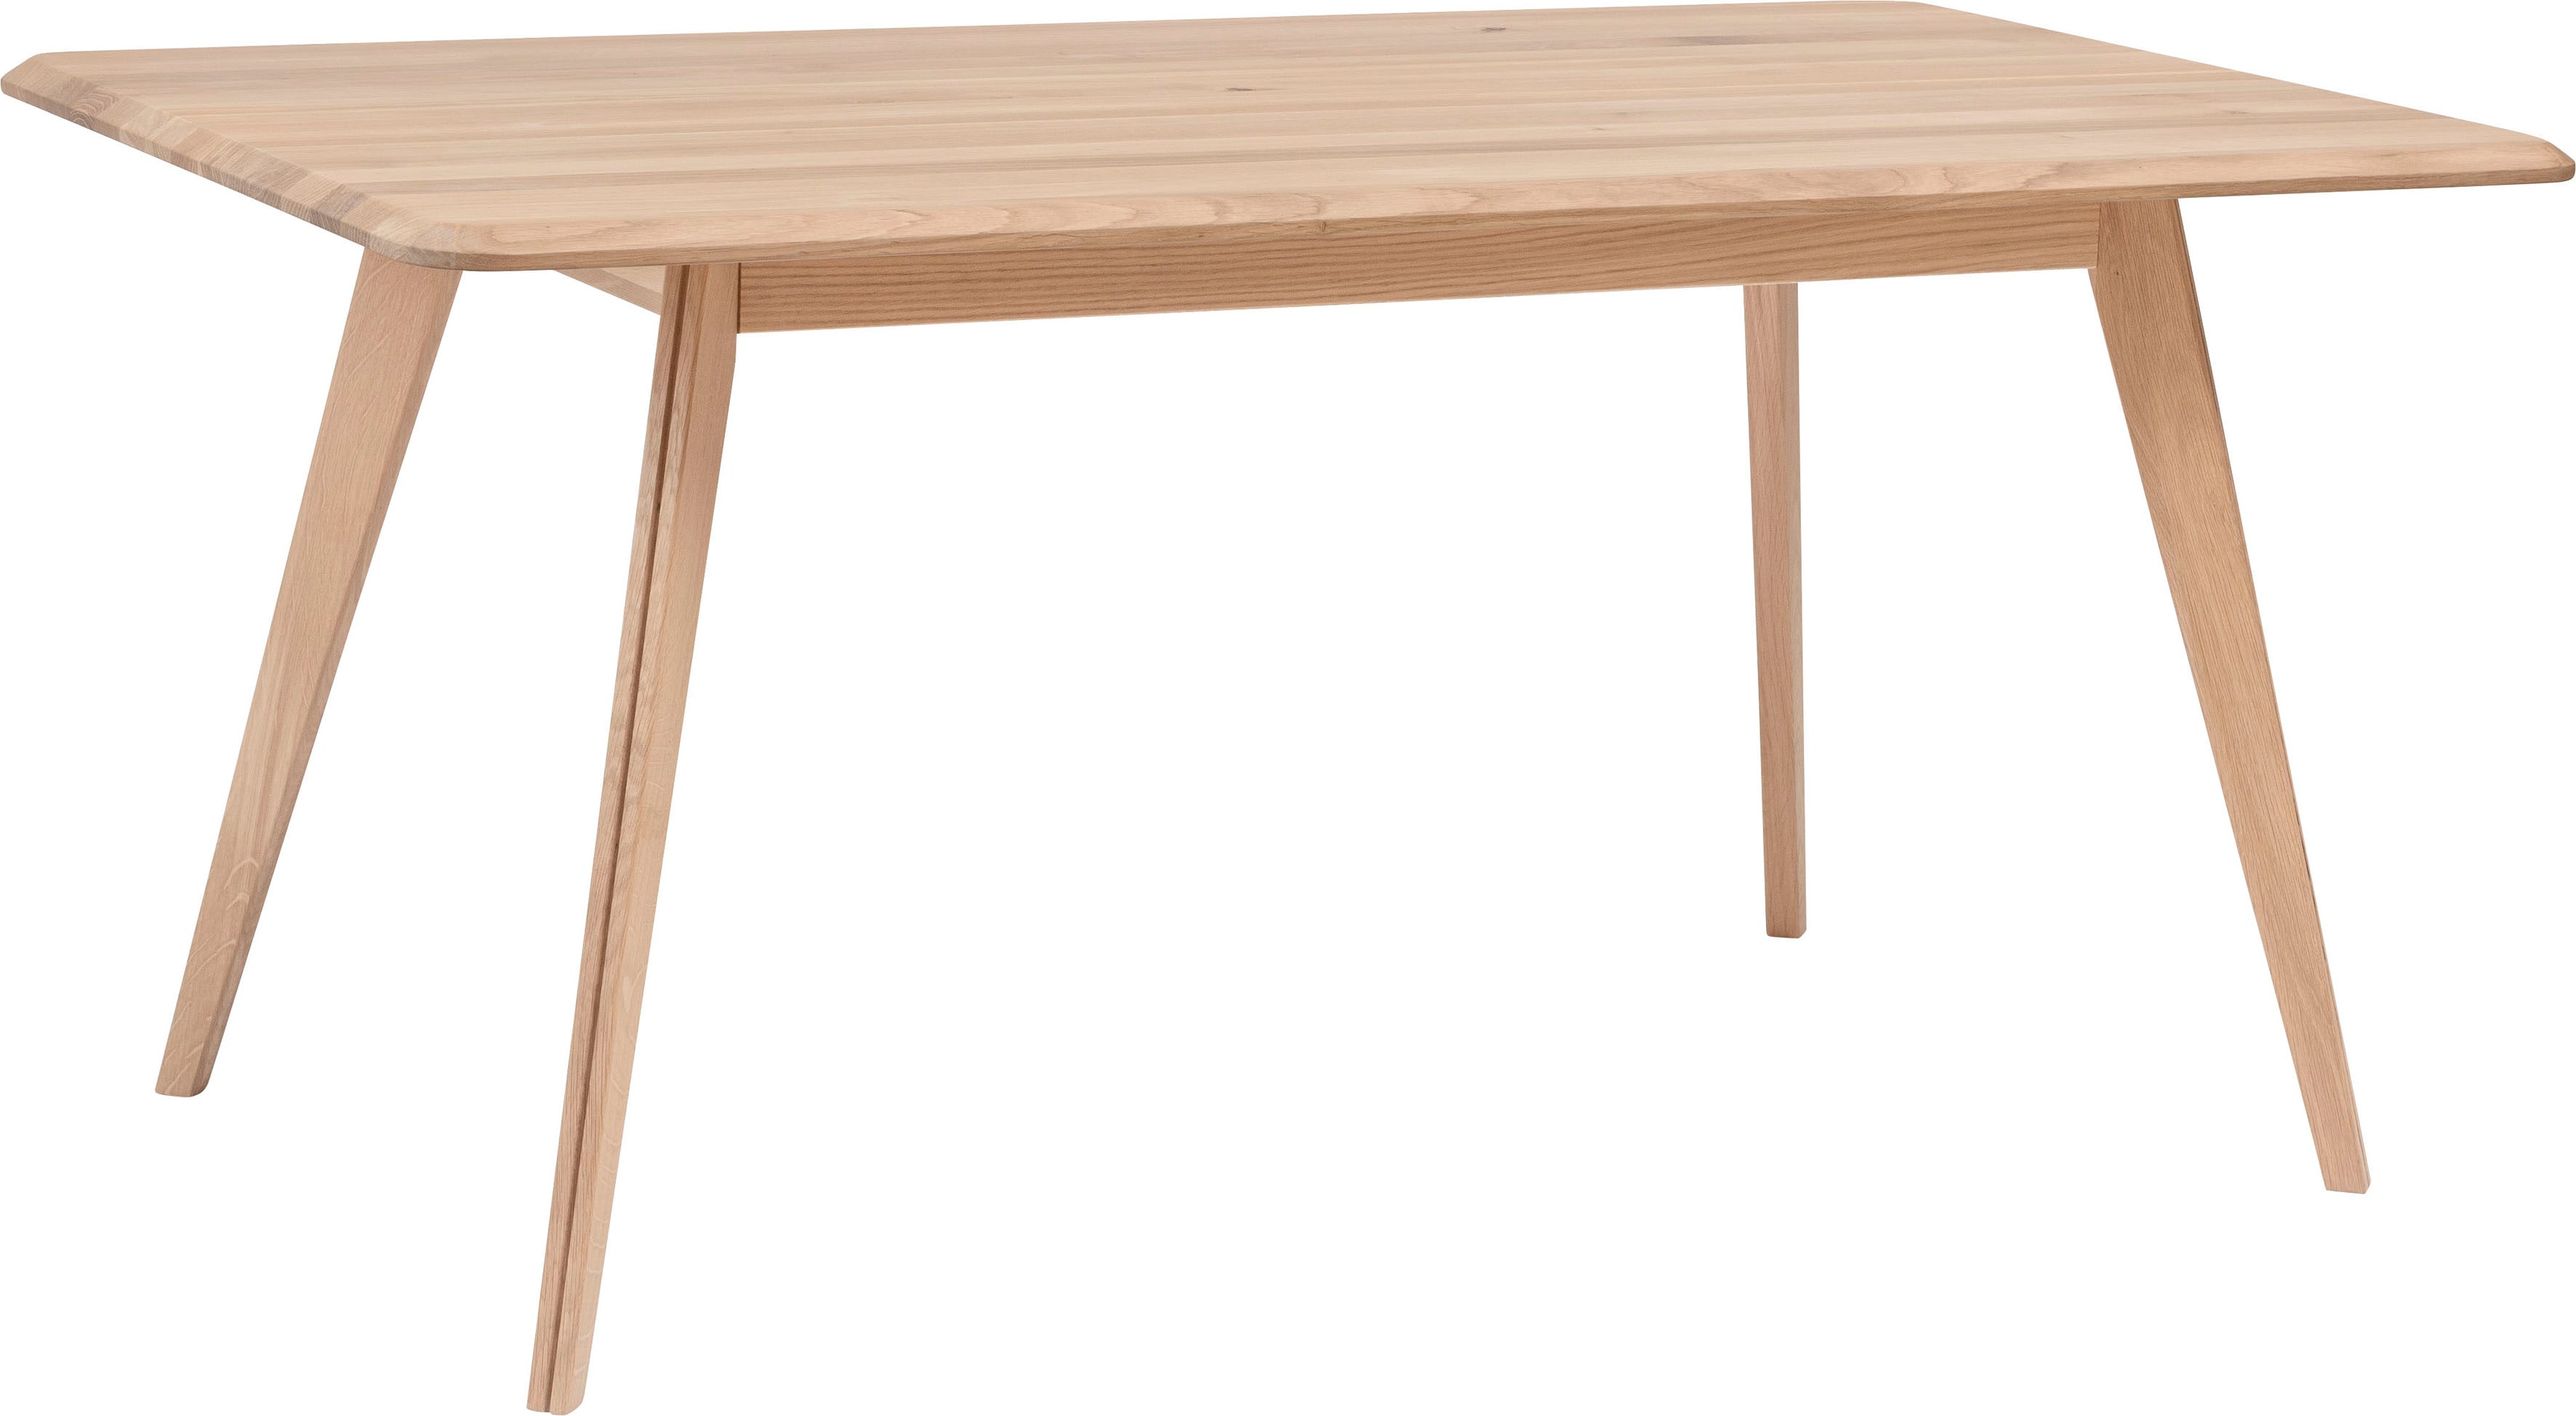 Home affaire Esstisch Infinity, aus schönem Massivholz, hochwertiges Design, in unterschiedlichen Tischbreiten erhältlich